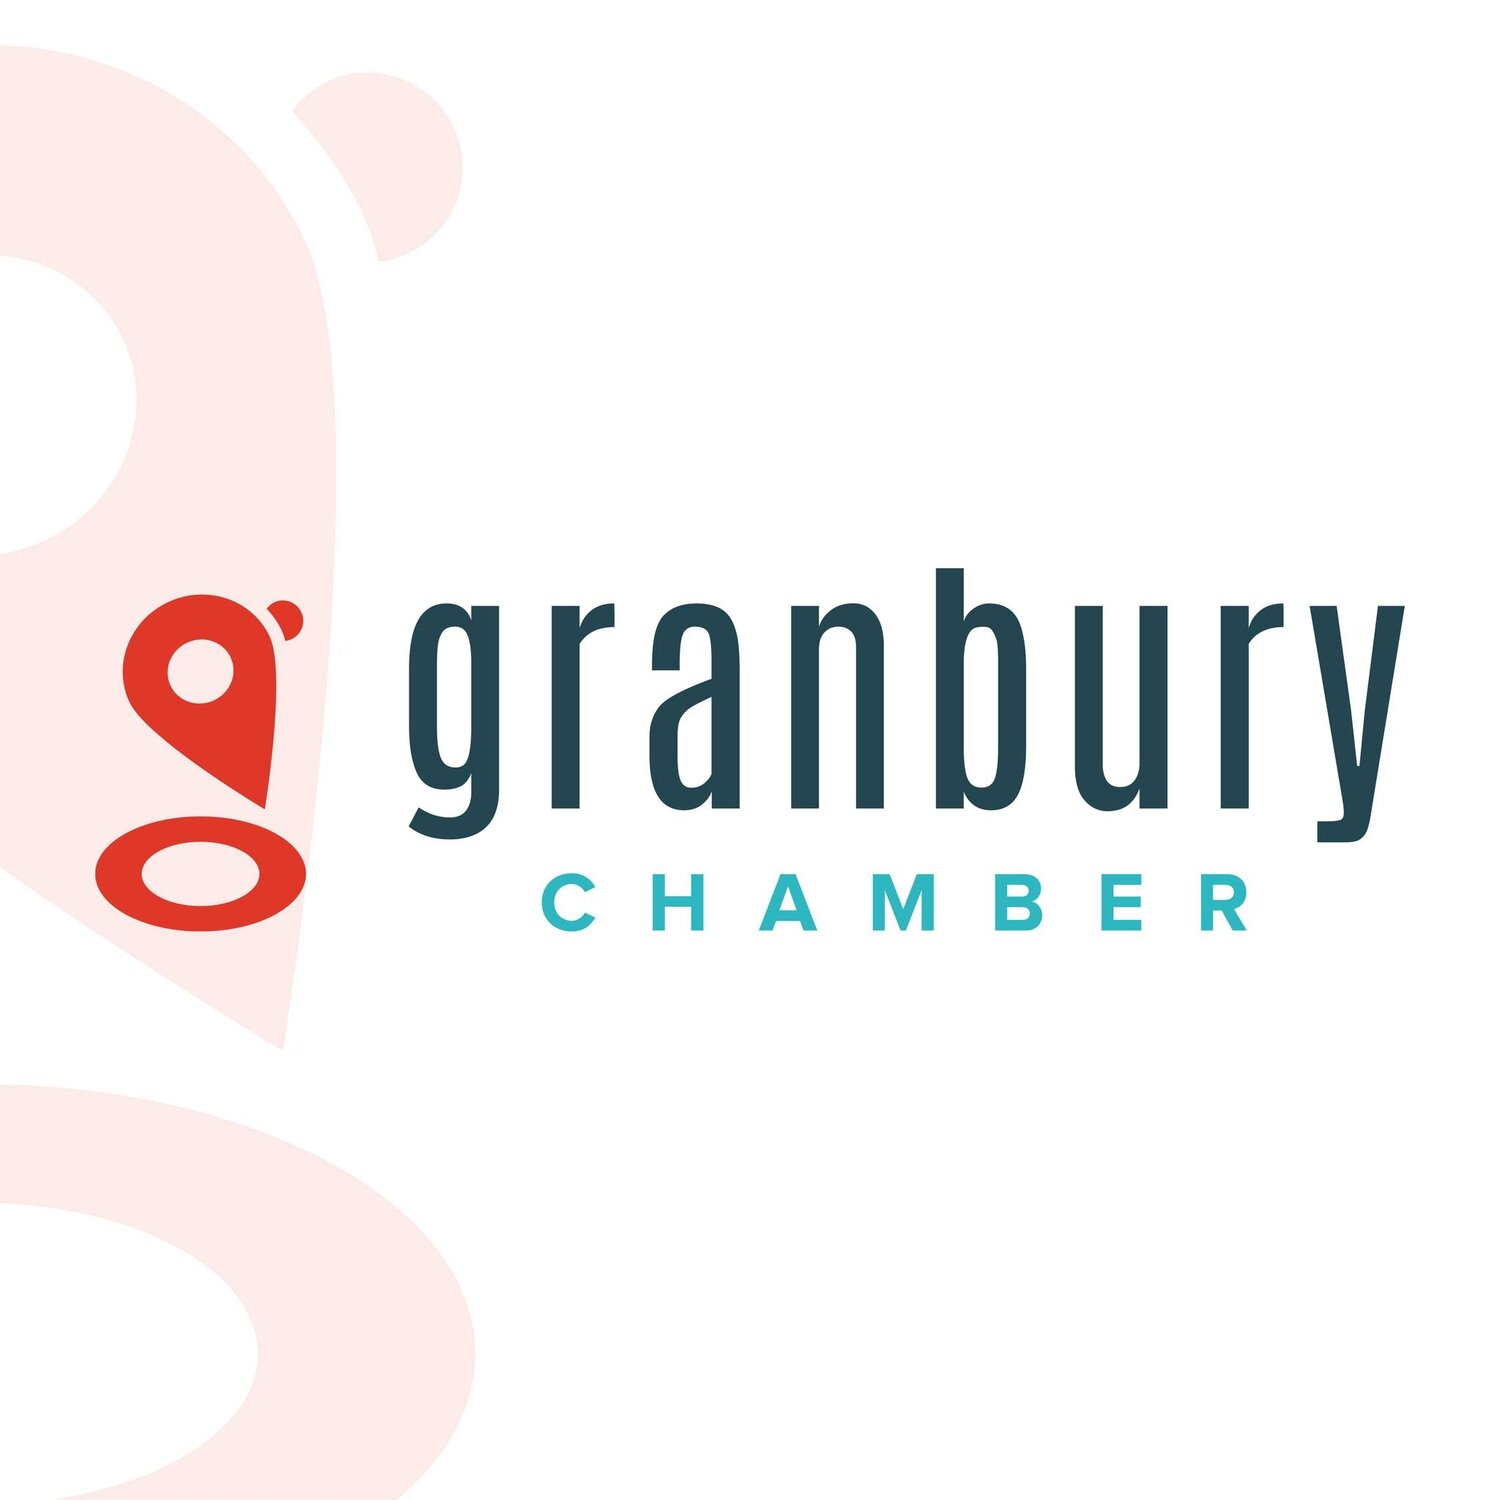 Granbury Chamber of Commerce.